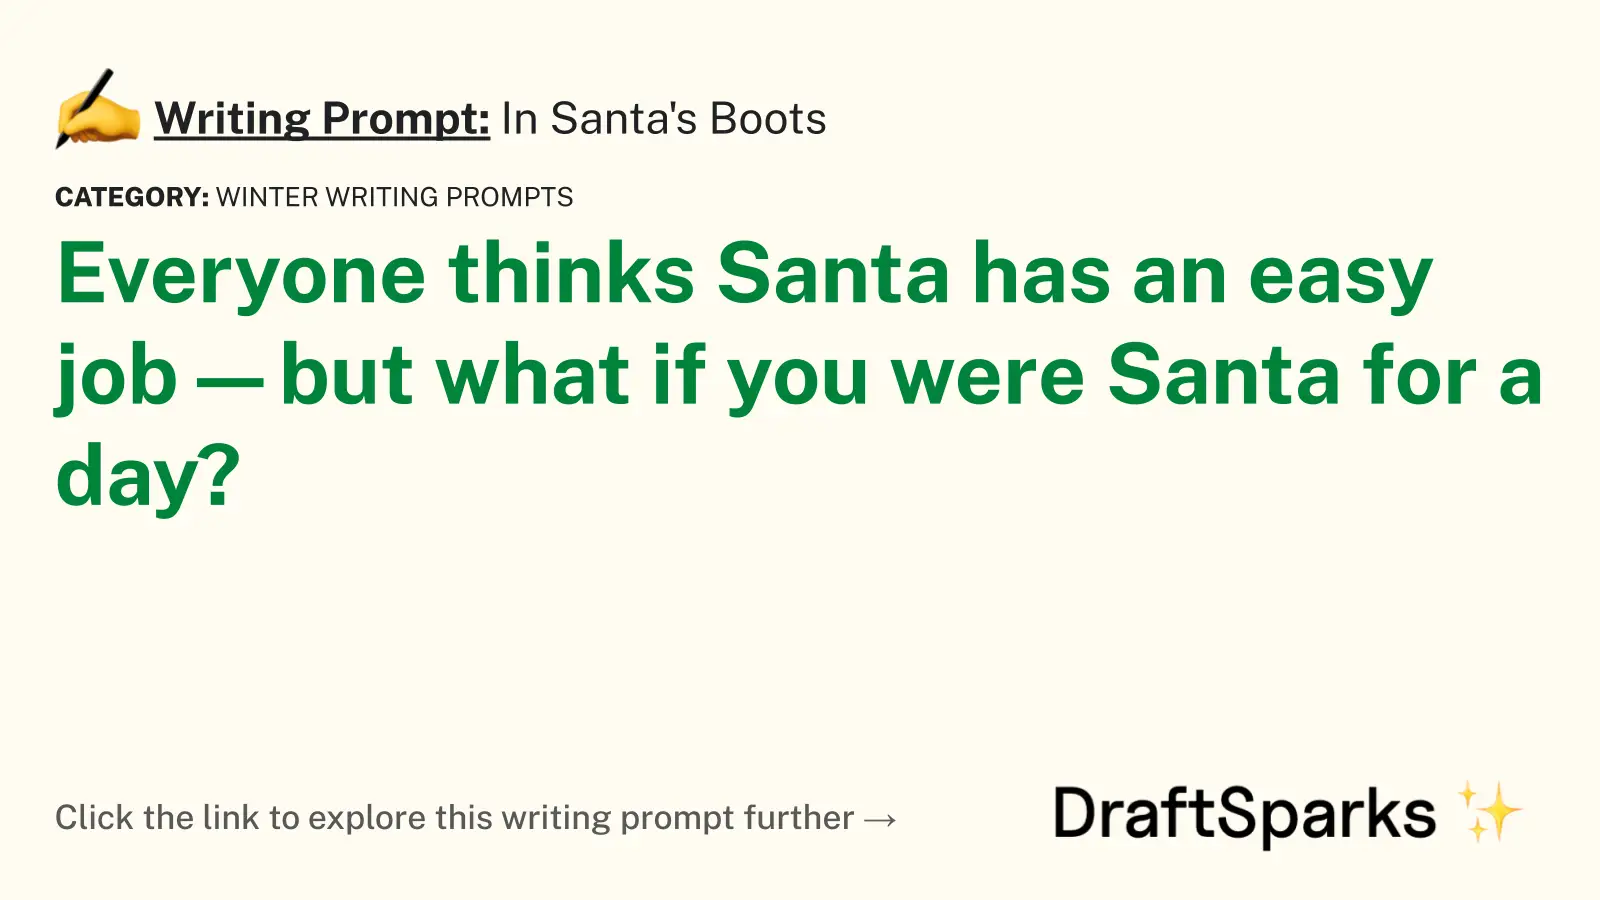 In Santa’s Boots